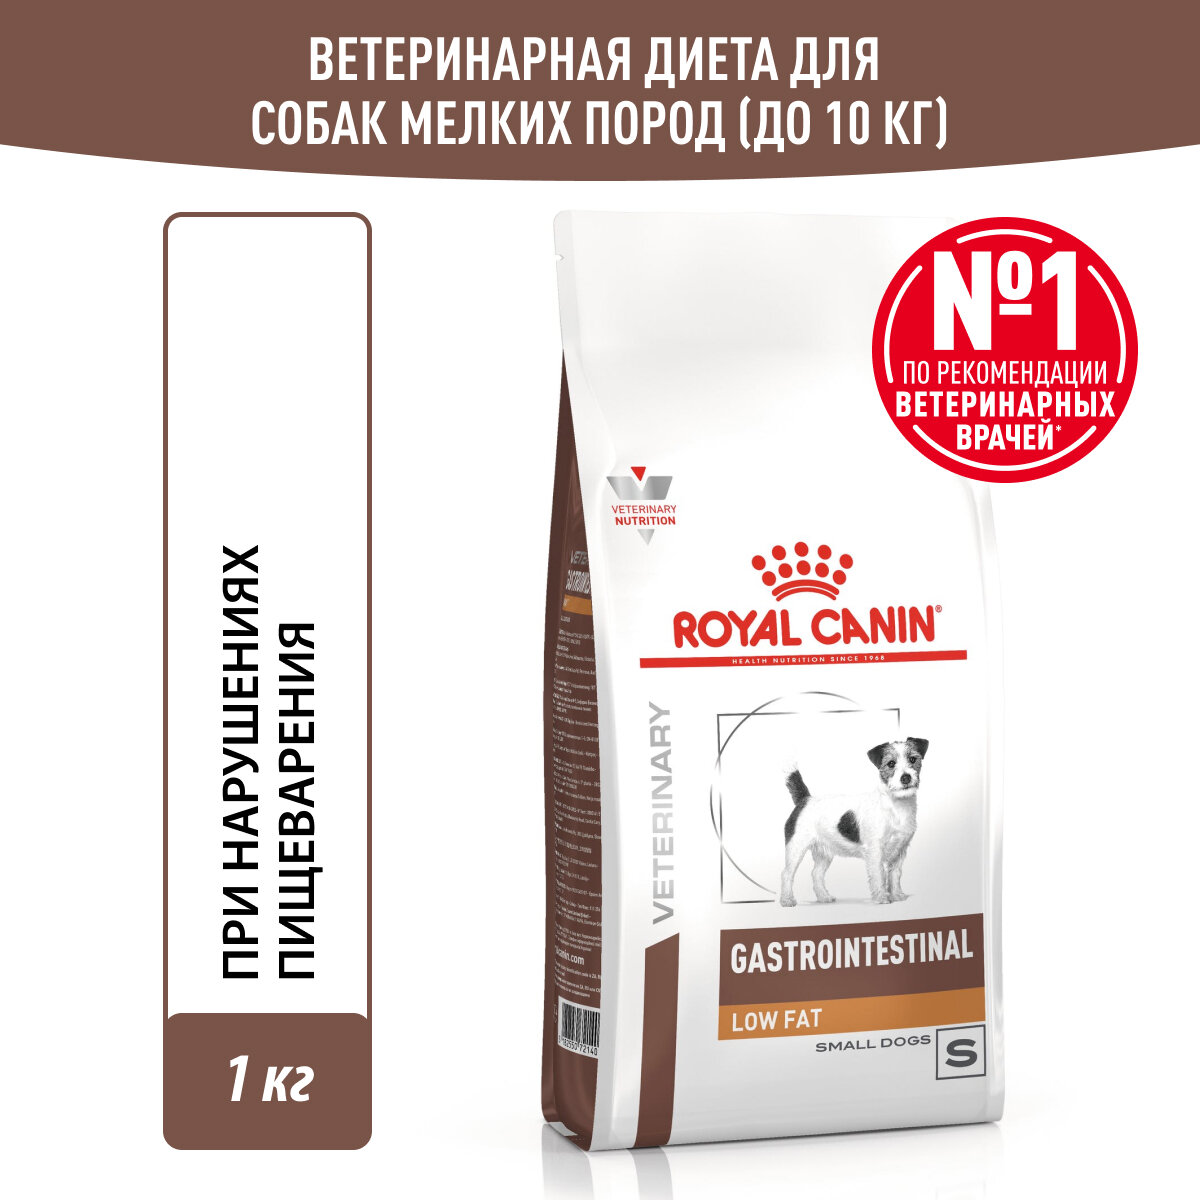 Royal Canin Gastrointestinal Low Fat Small Dog сухой корм для взрослых собак мелких пород при нарушениях пищеварения (3 кг) - фото №1